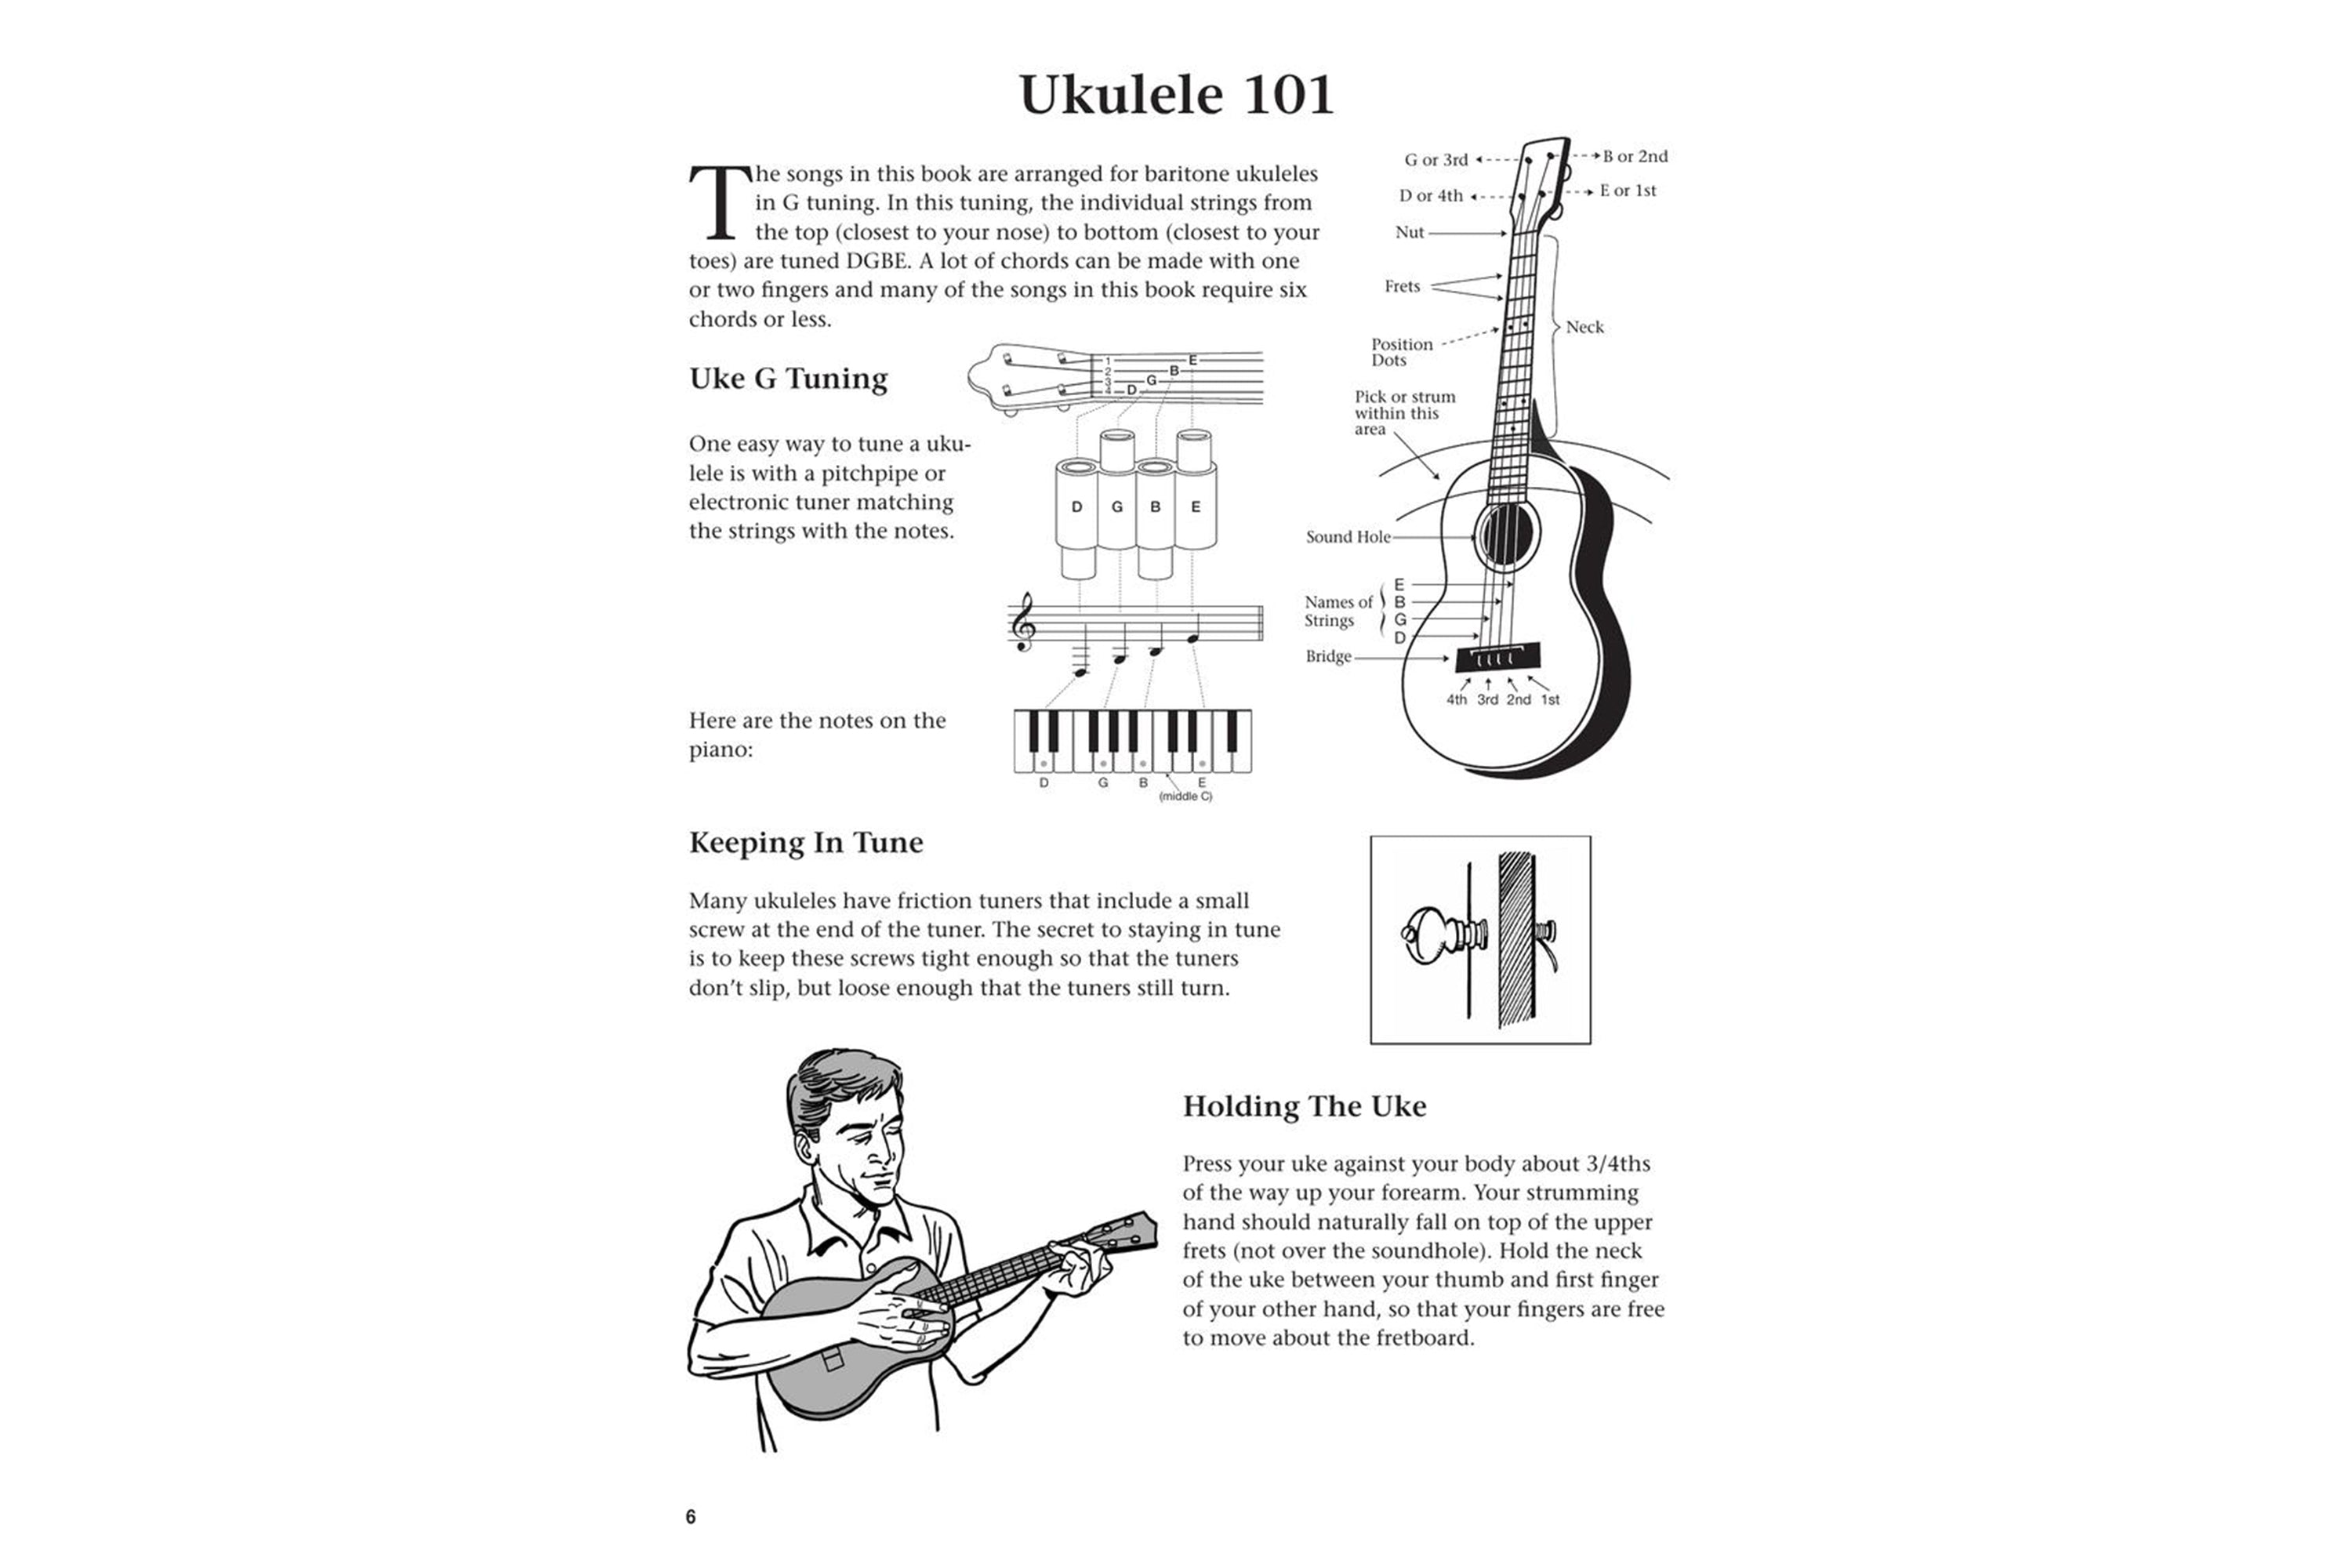 The Daily Ukulele – Baritone Edition